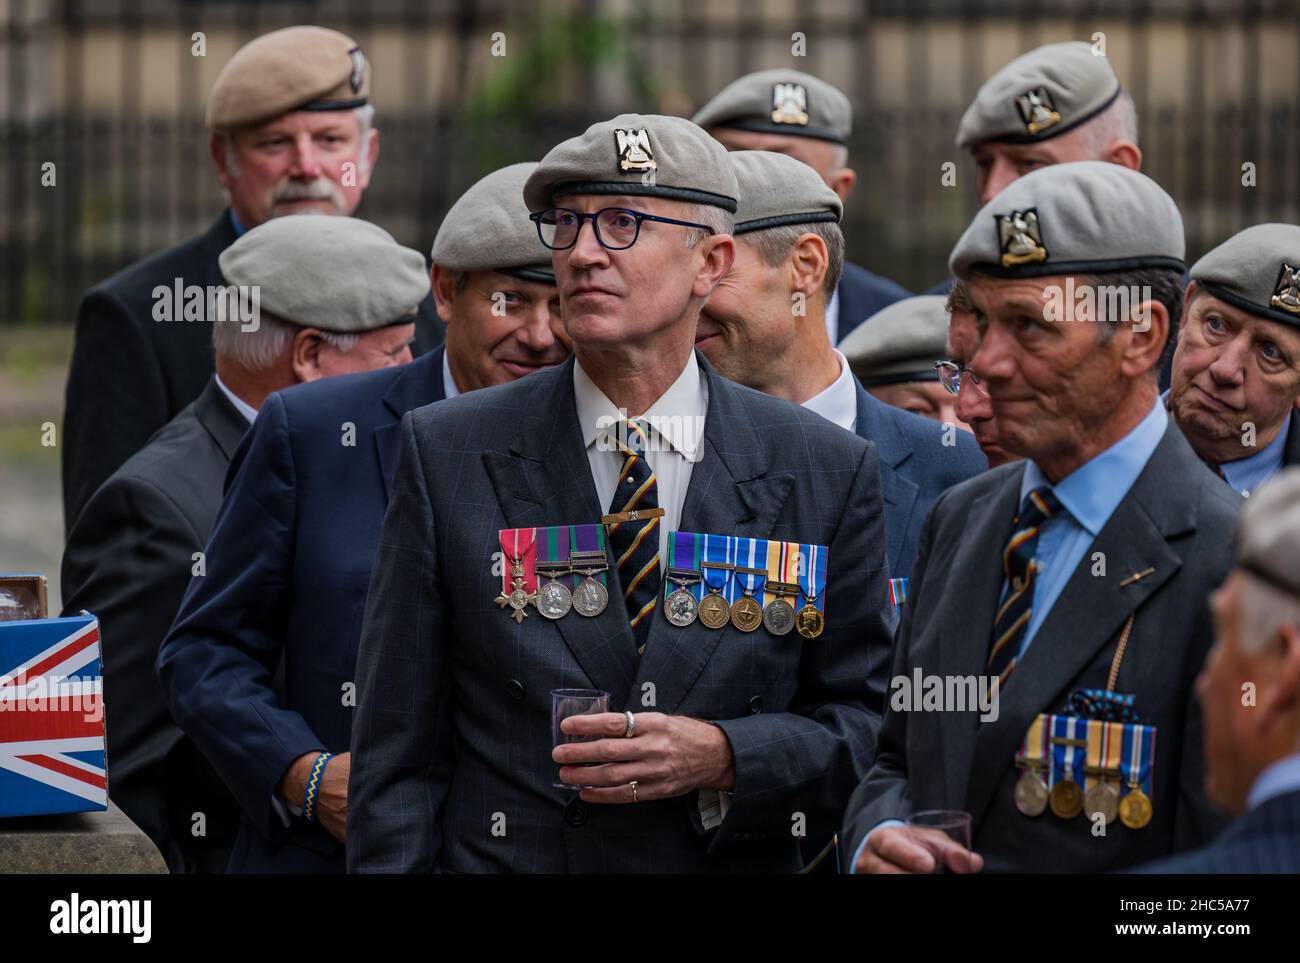 Los veteranos soldados de los Royal Scots Dragoon Guardias que llevan medallas se reúnen en un evento, Royal Mile, Edimburgo, Escocia, Reino Unido Foto de stock